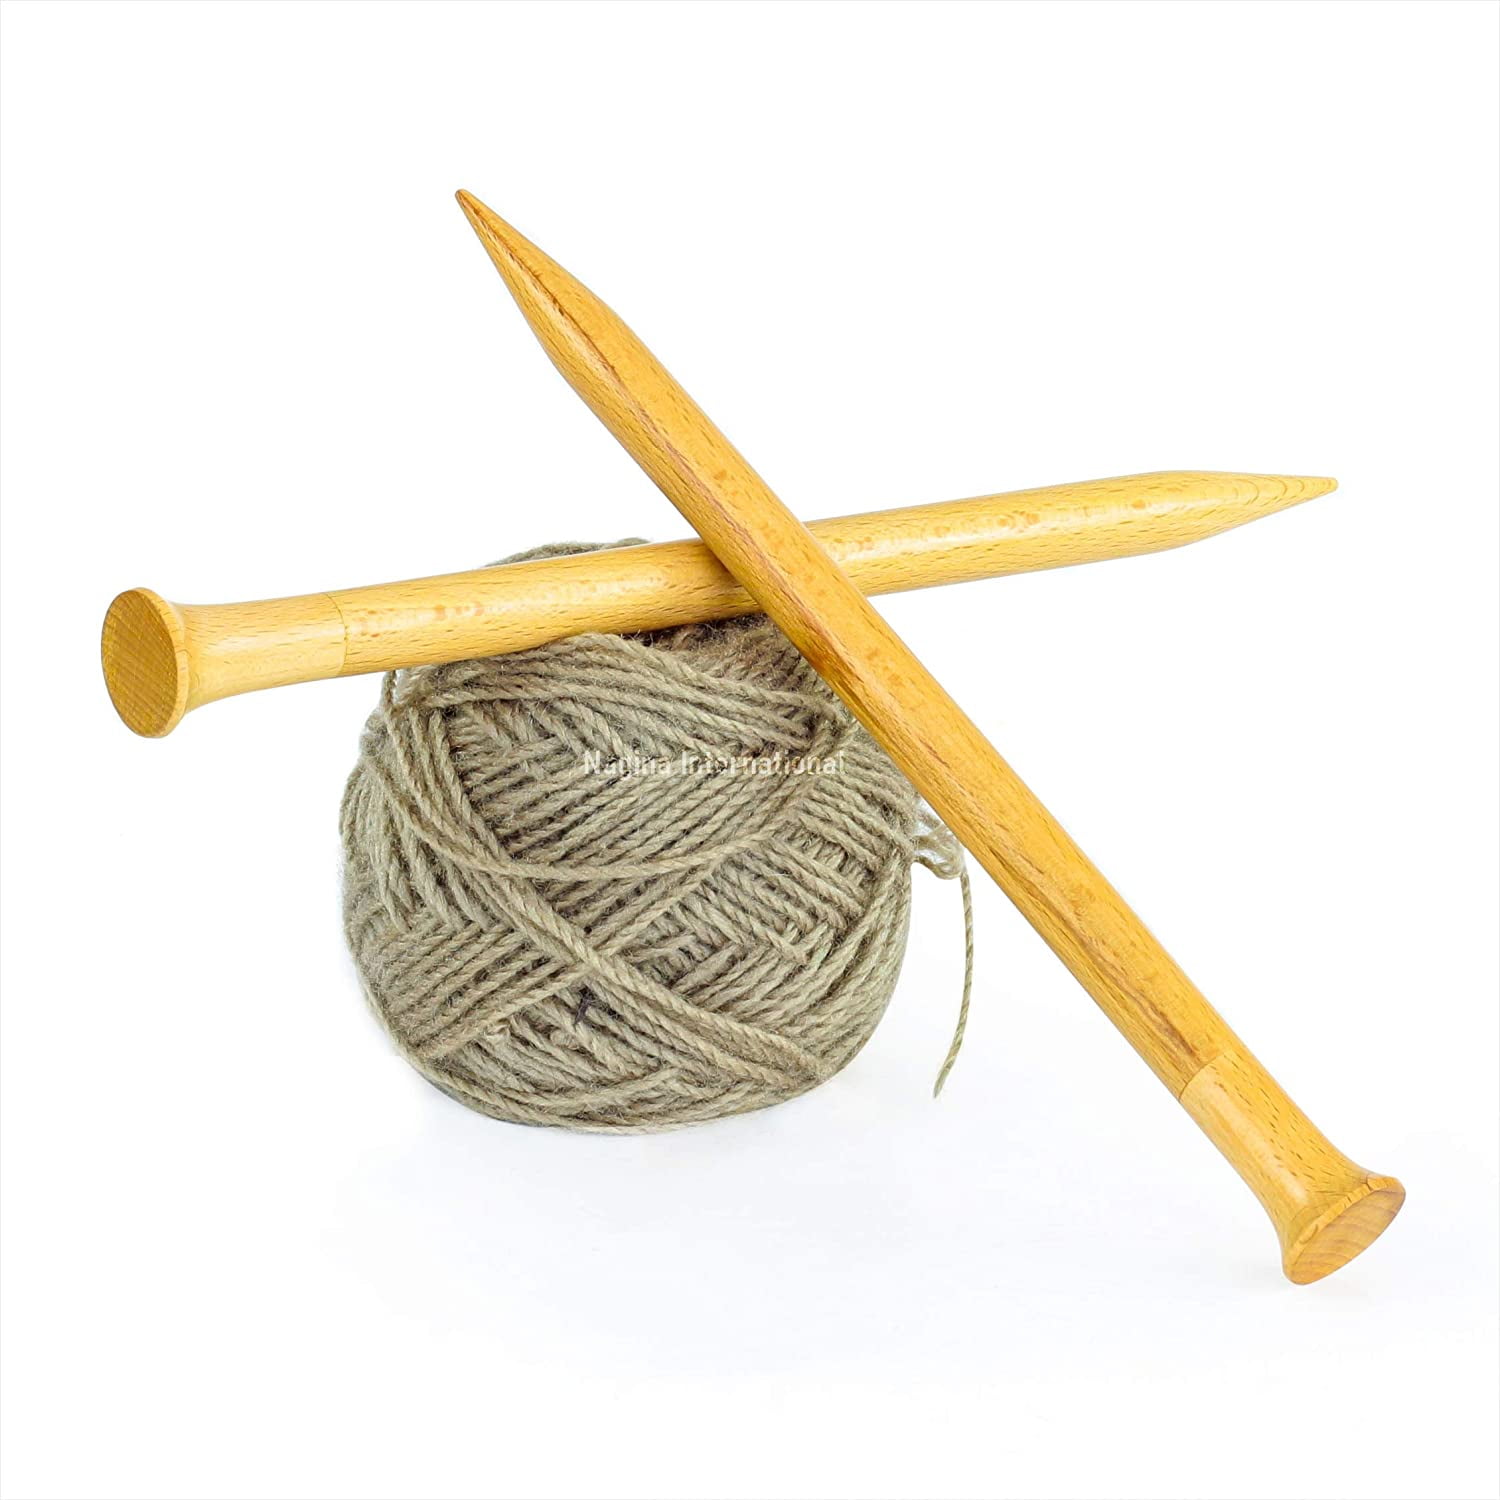 95 Pack Crochet Hooks Set, Ergonomic Knitting Needle Weave Yarn